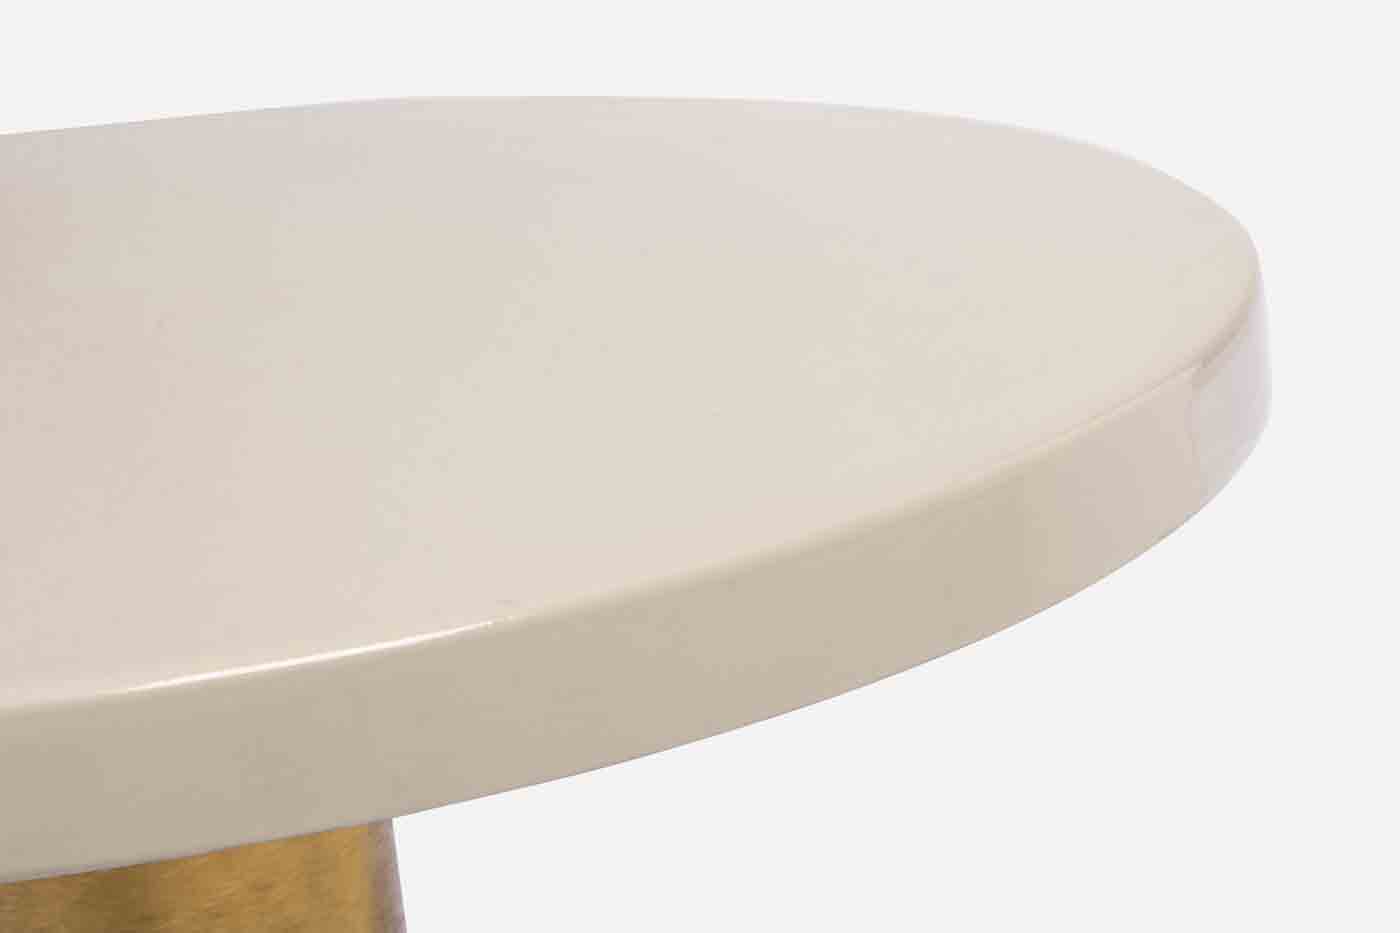 Der Beistelltisch Nalima wurde aus Metall gerfertigt, welches eine Feinbearbeitung aus Lack erhalten hat. Zusätzlich verfügt der Tisch über vergoldete Bereiche, welche das moderne Design unterstreichen.